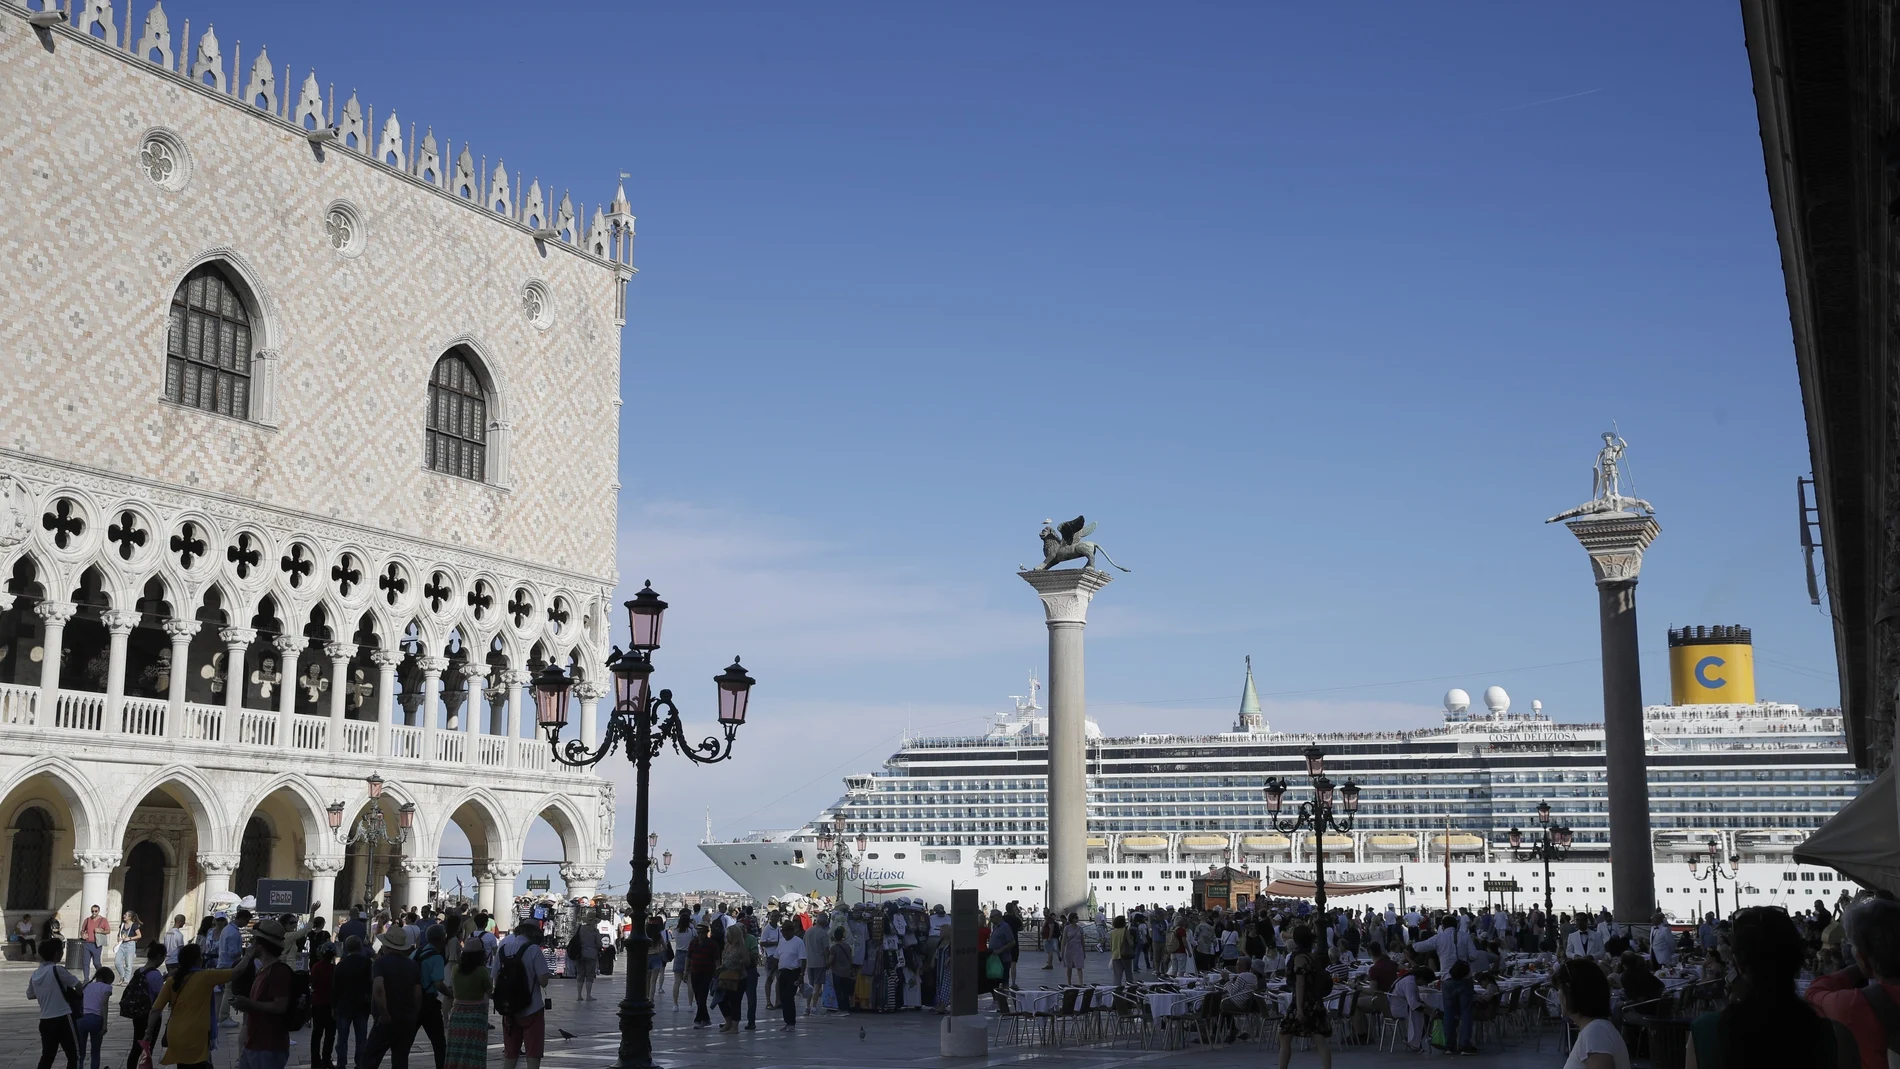 Cruceristas toman tierra en la emblemática Plaza de San Marcos de Venecia en junio de 2019